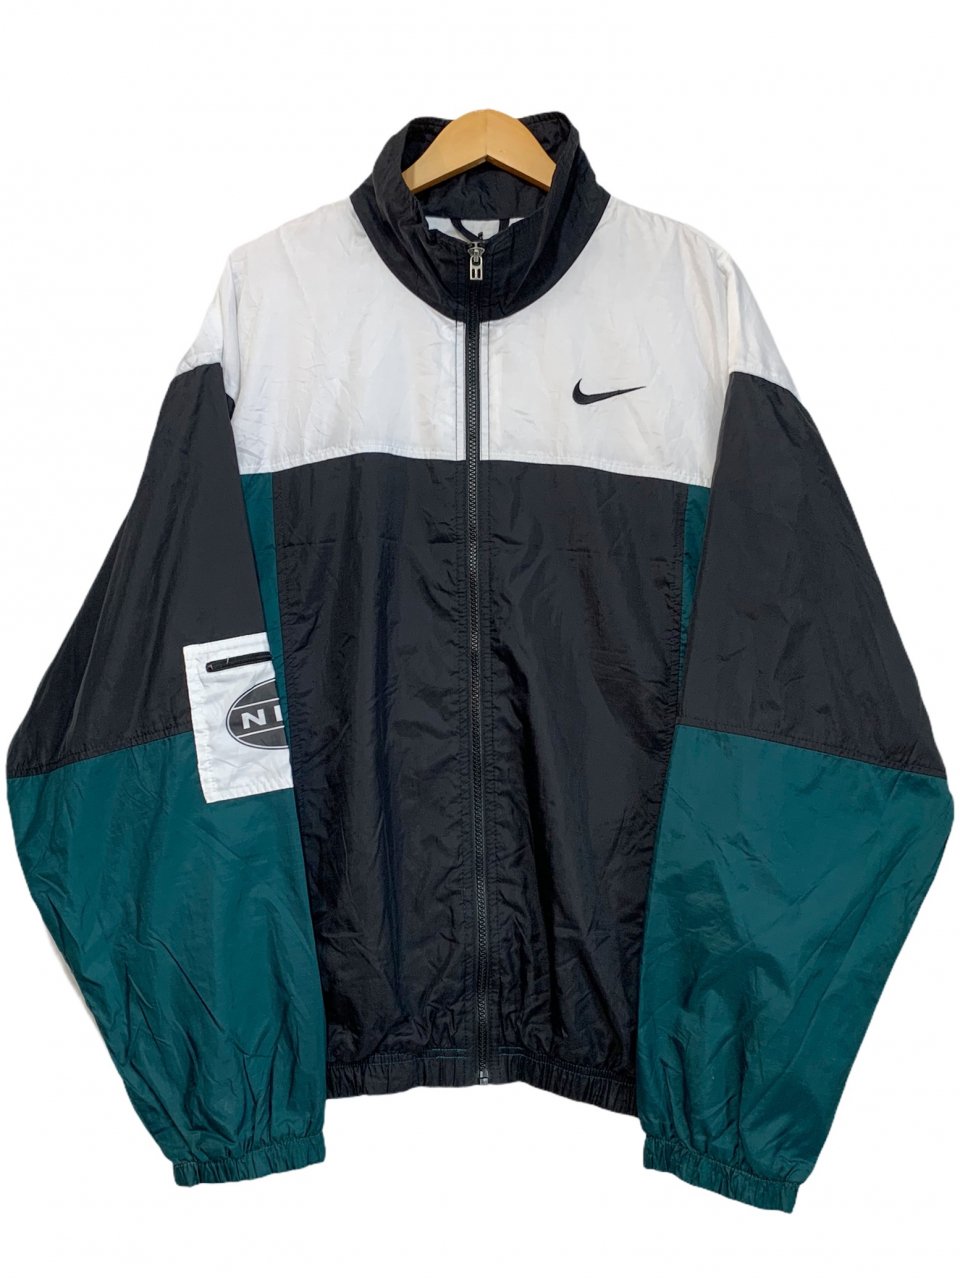 90's ナイキ ナイロン ジャケット Nike Nylon Jacket